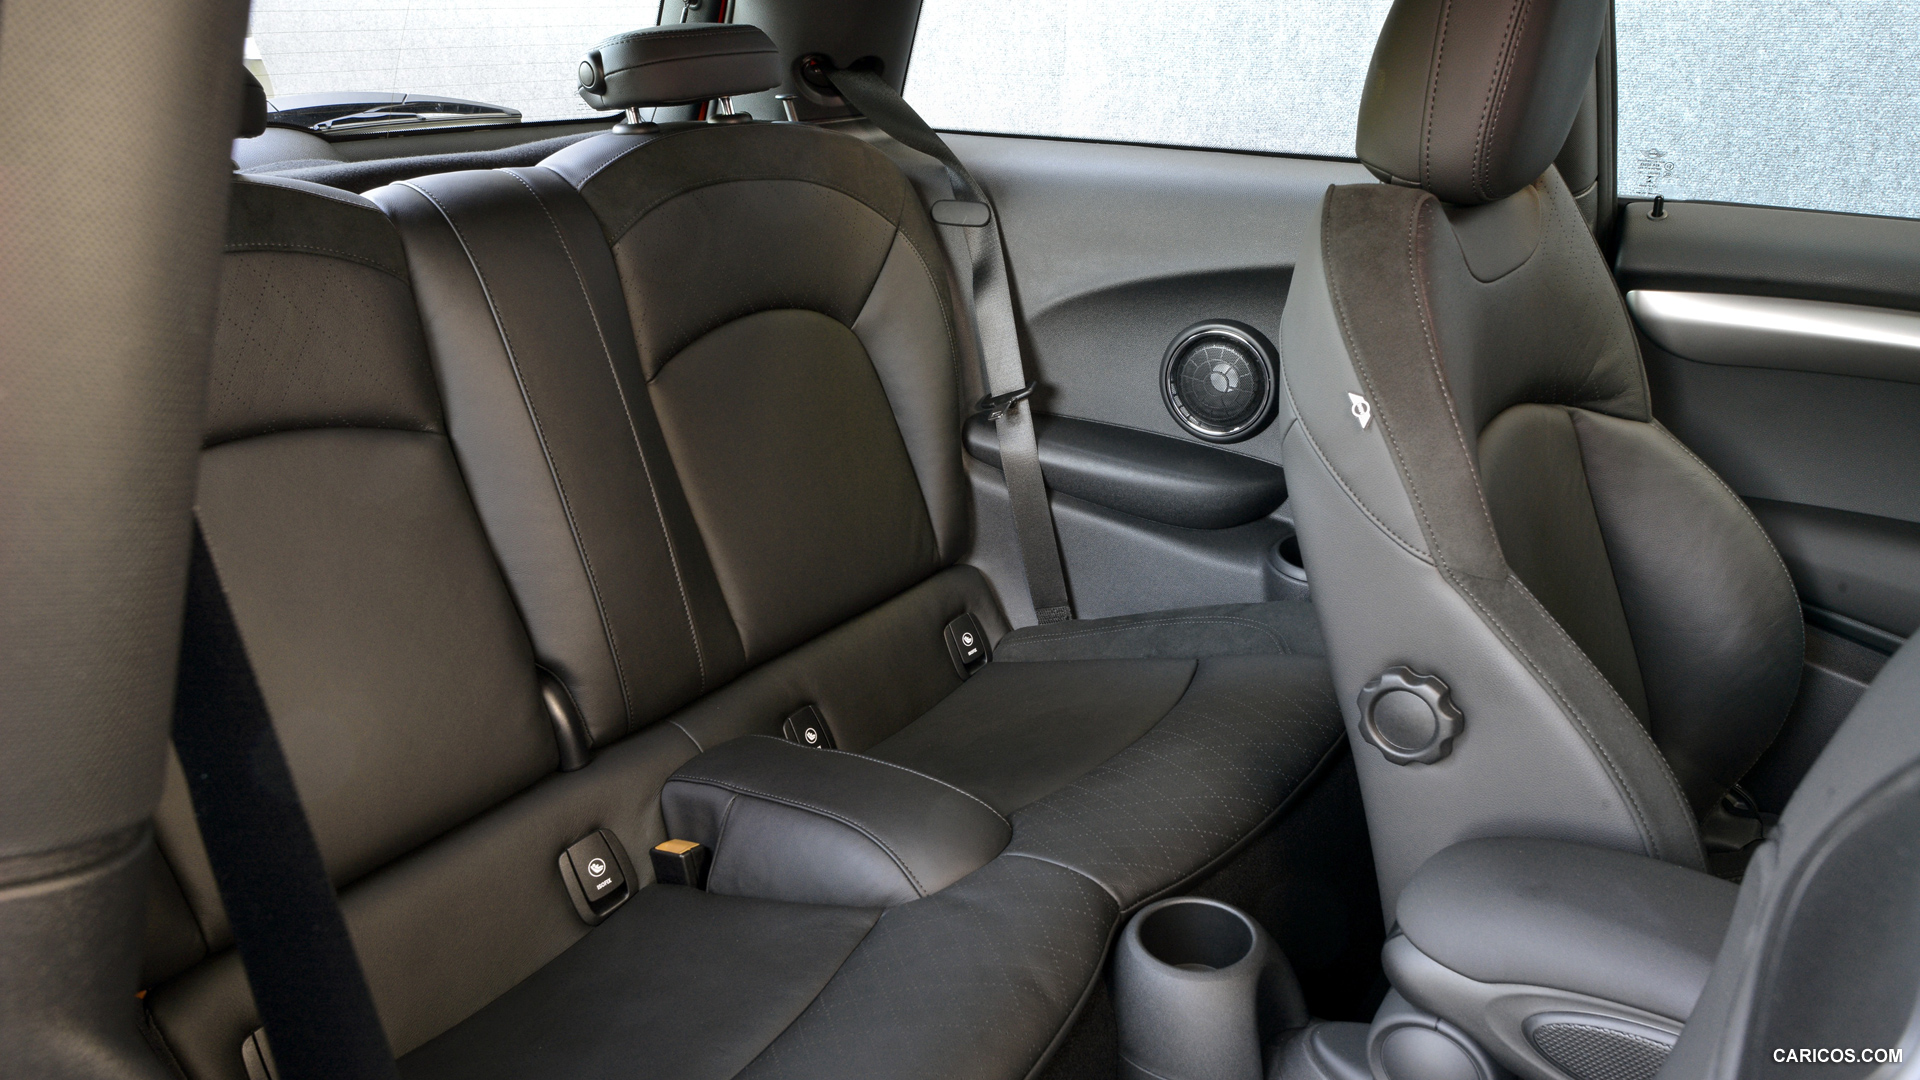 2015 MINI Cooper  - Interior Rear Seats, #279 of 280